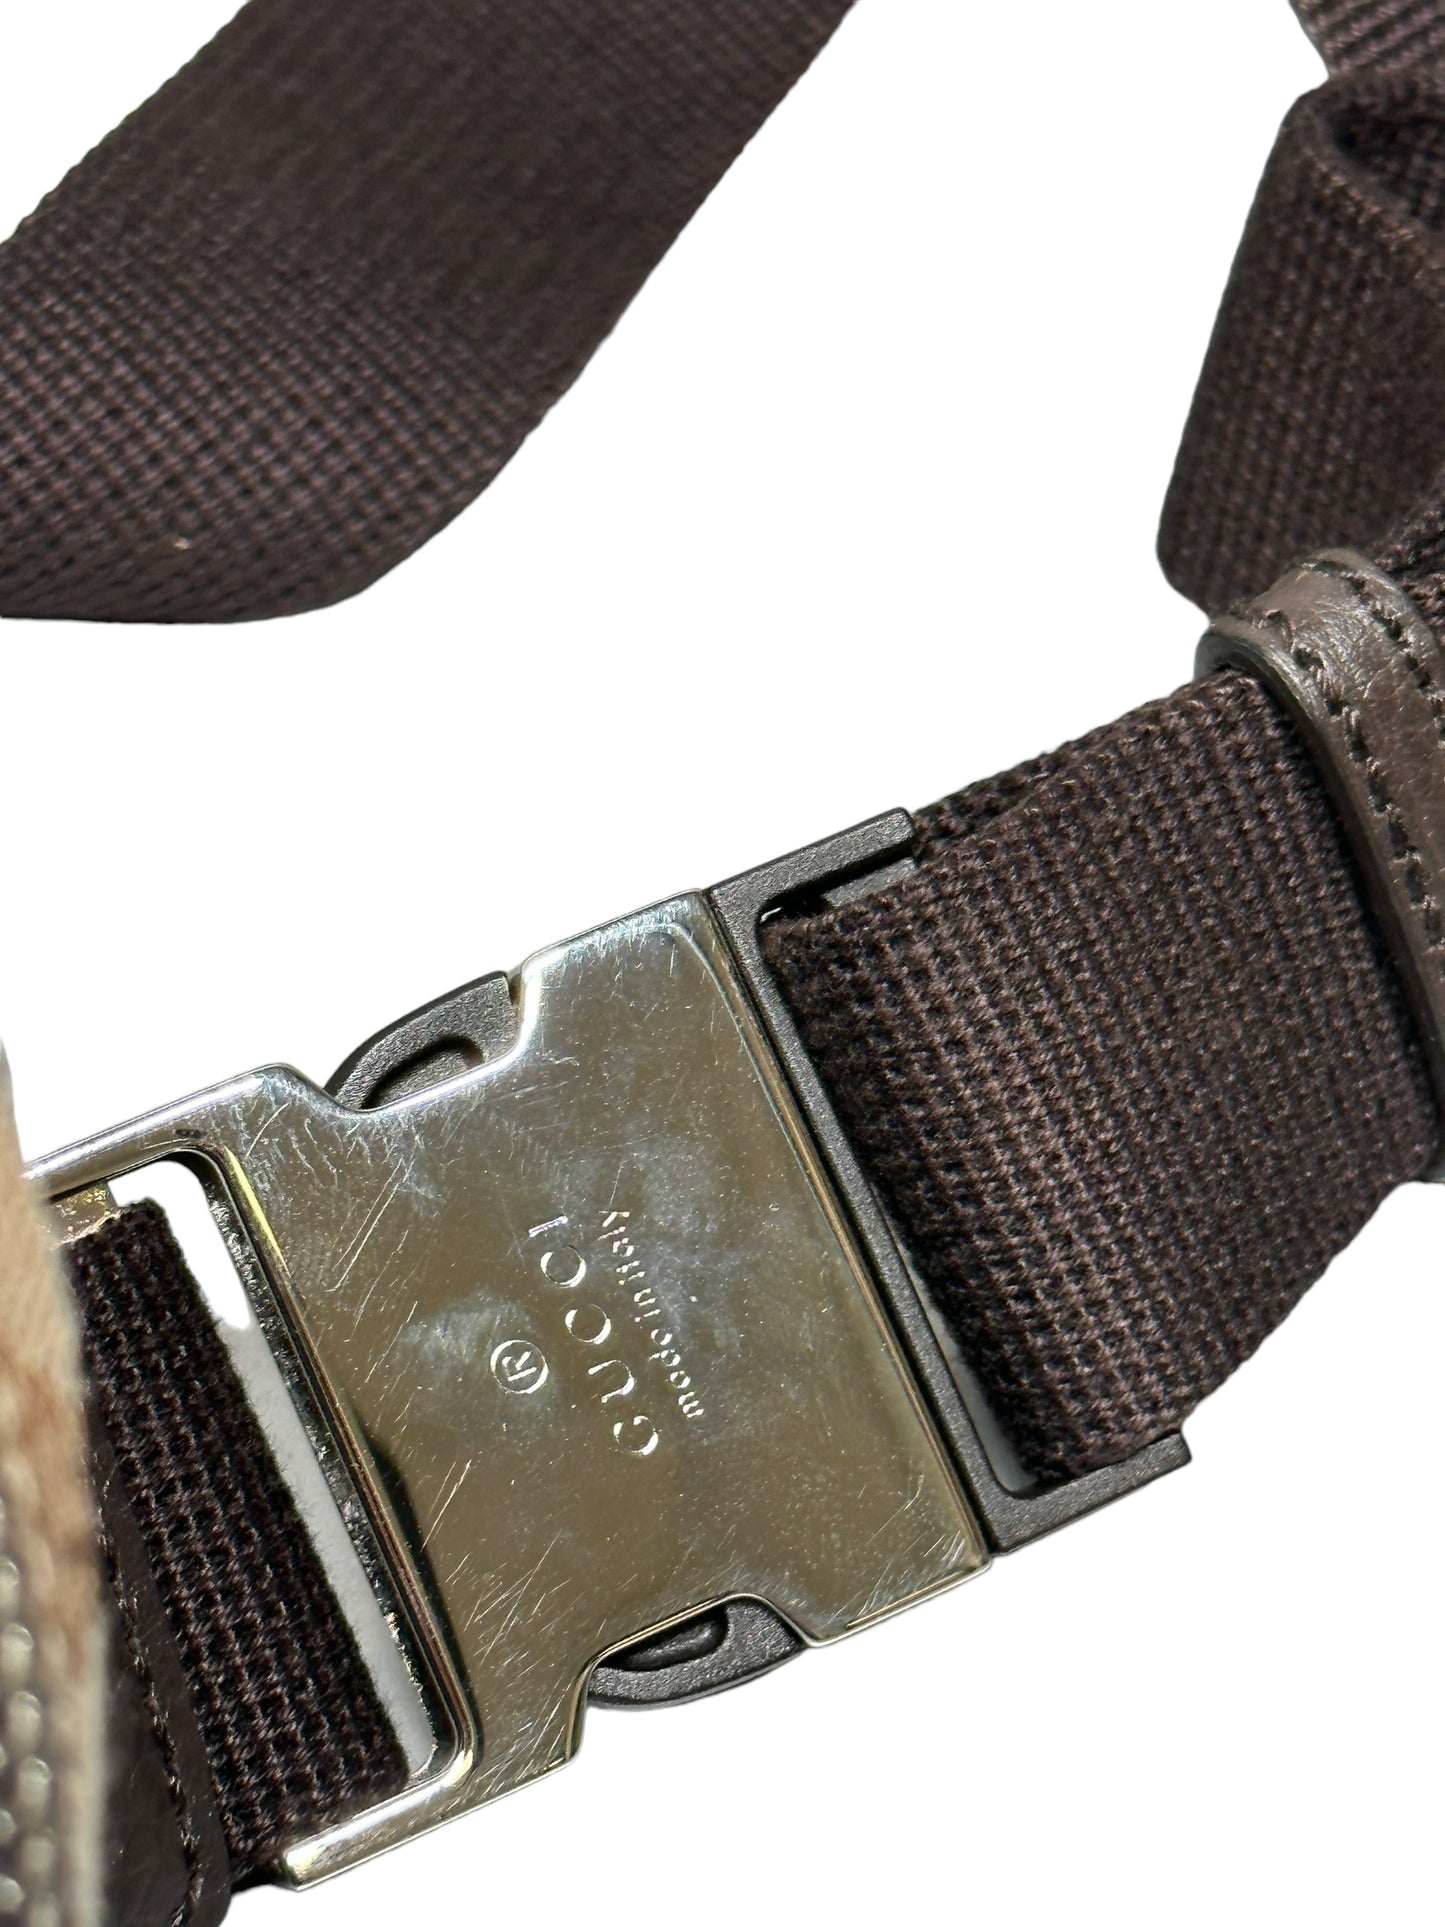 GUCCI- Vintage Belt Bag